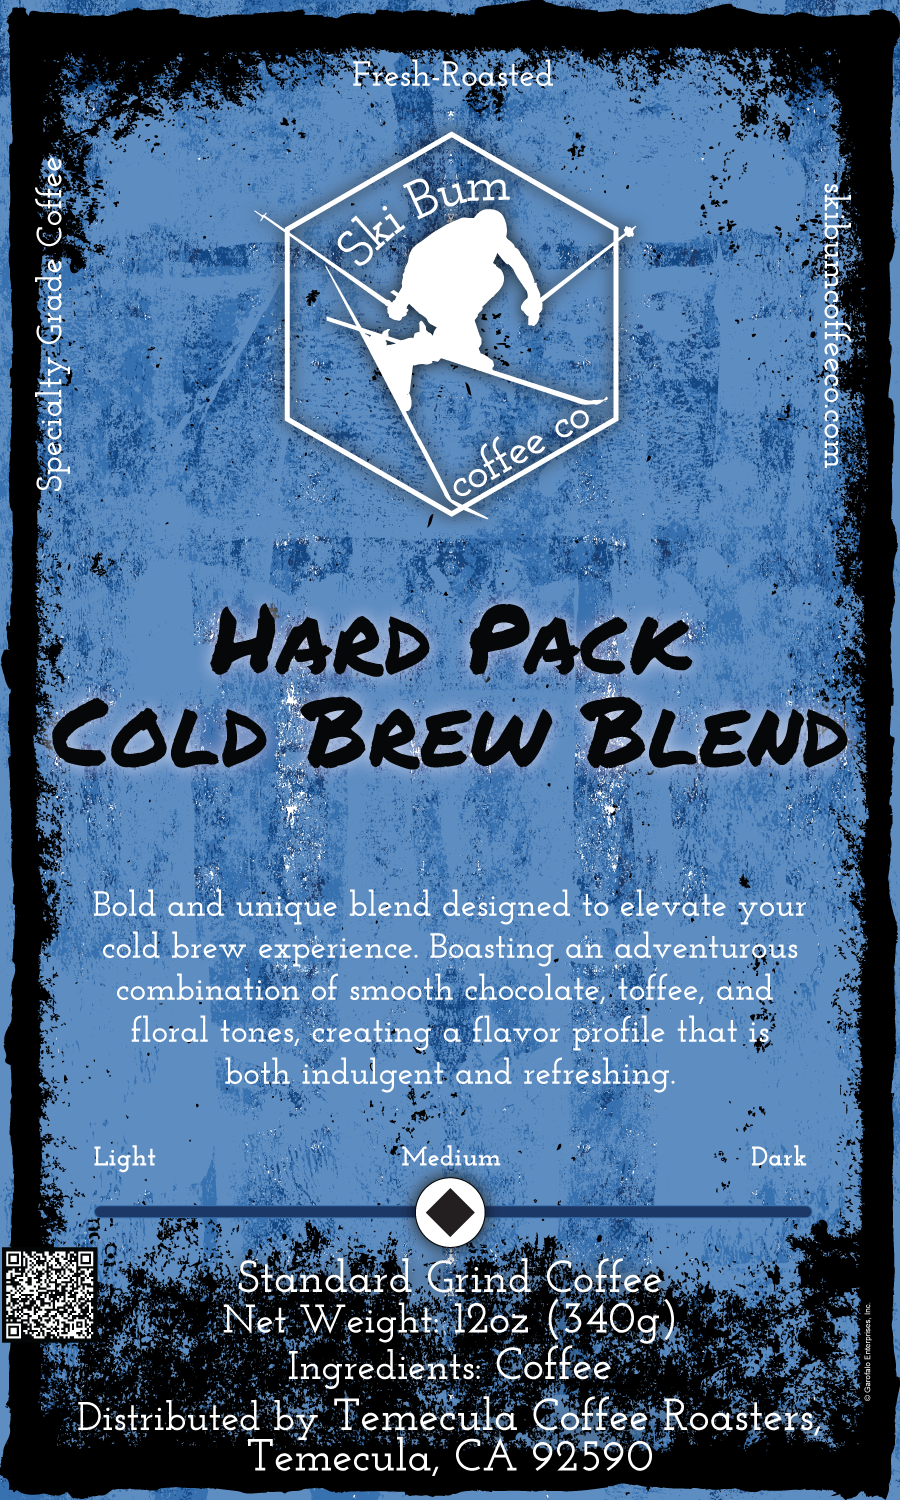 Hard Pack Cold Brew Blend